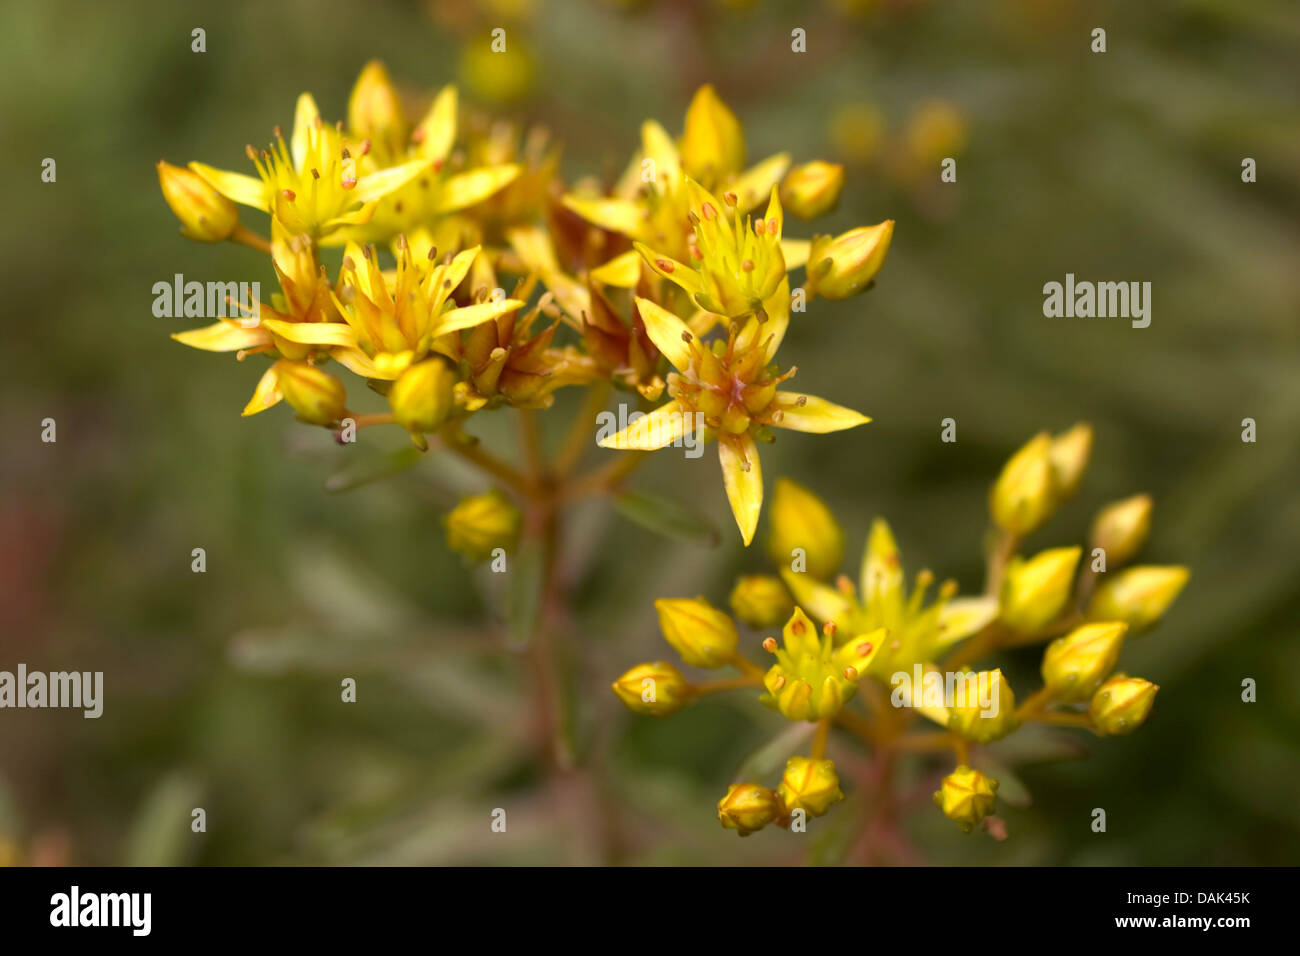 Orpin (Sedum middendorffianum Alexis philonenko), blooming, Allemagne Banque D'Images